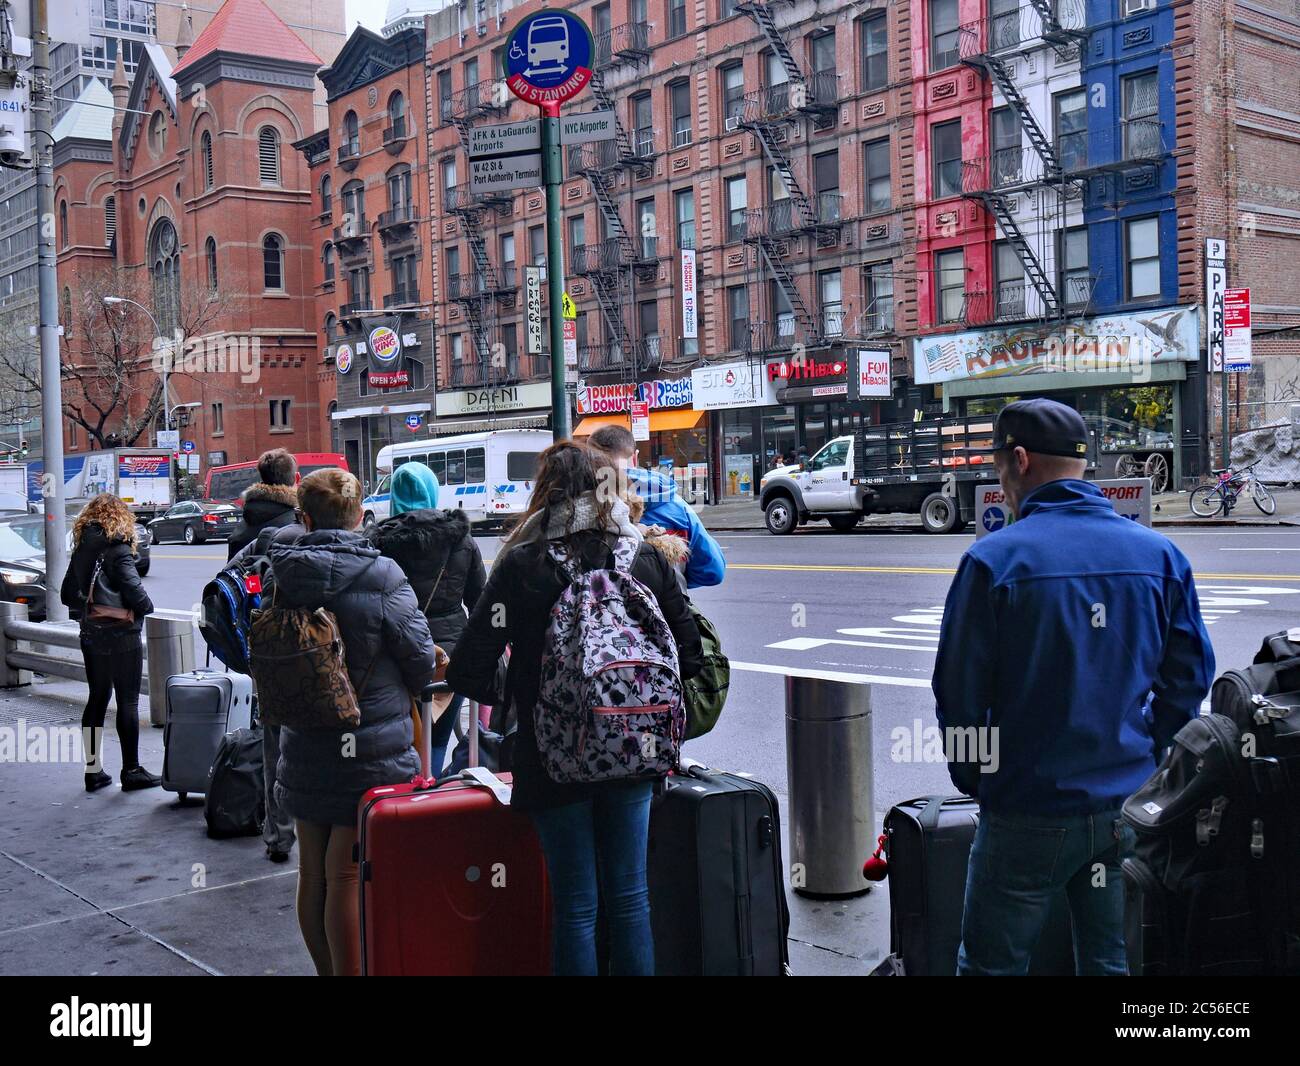 New York, NY - 27 marzo 2017: I viaggiatori che arrivano al terminal degli autobus della Port Authority aspettano sul marciapiede esterno per i taxi e gli autobus della città. Foto Stock